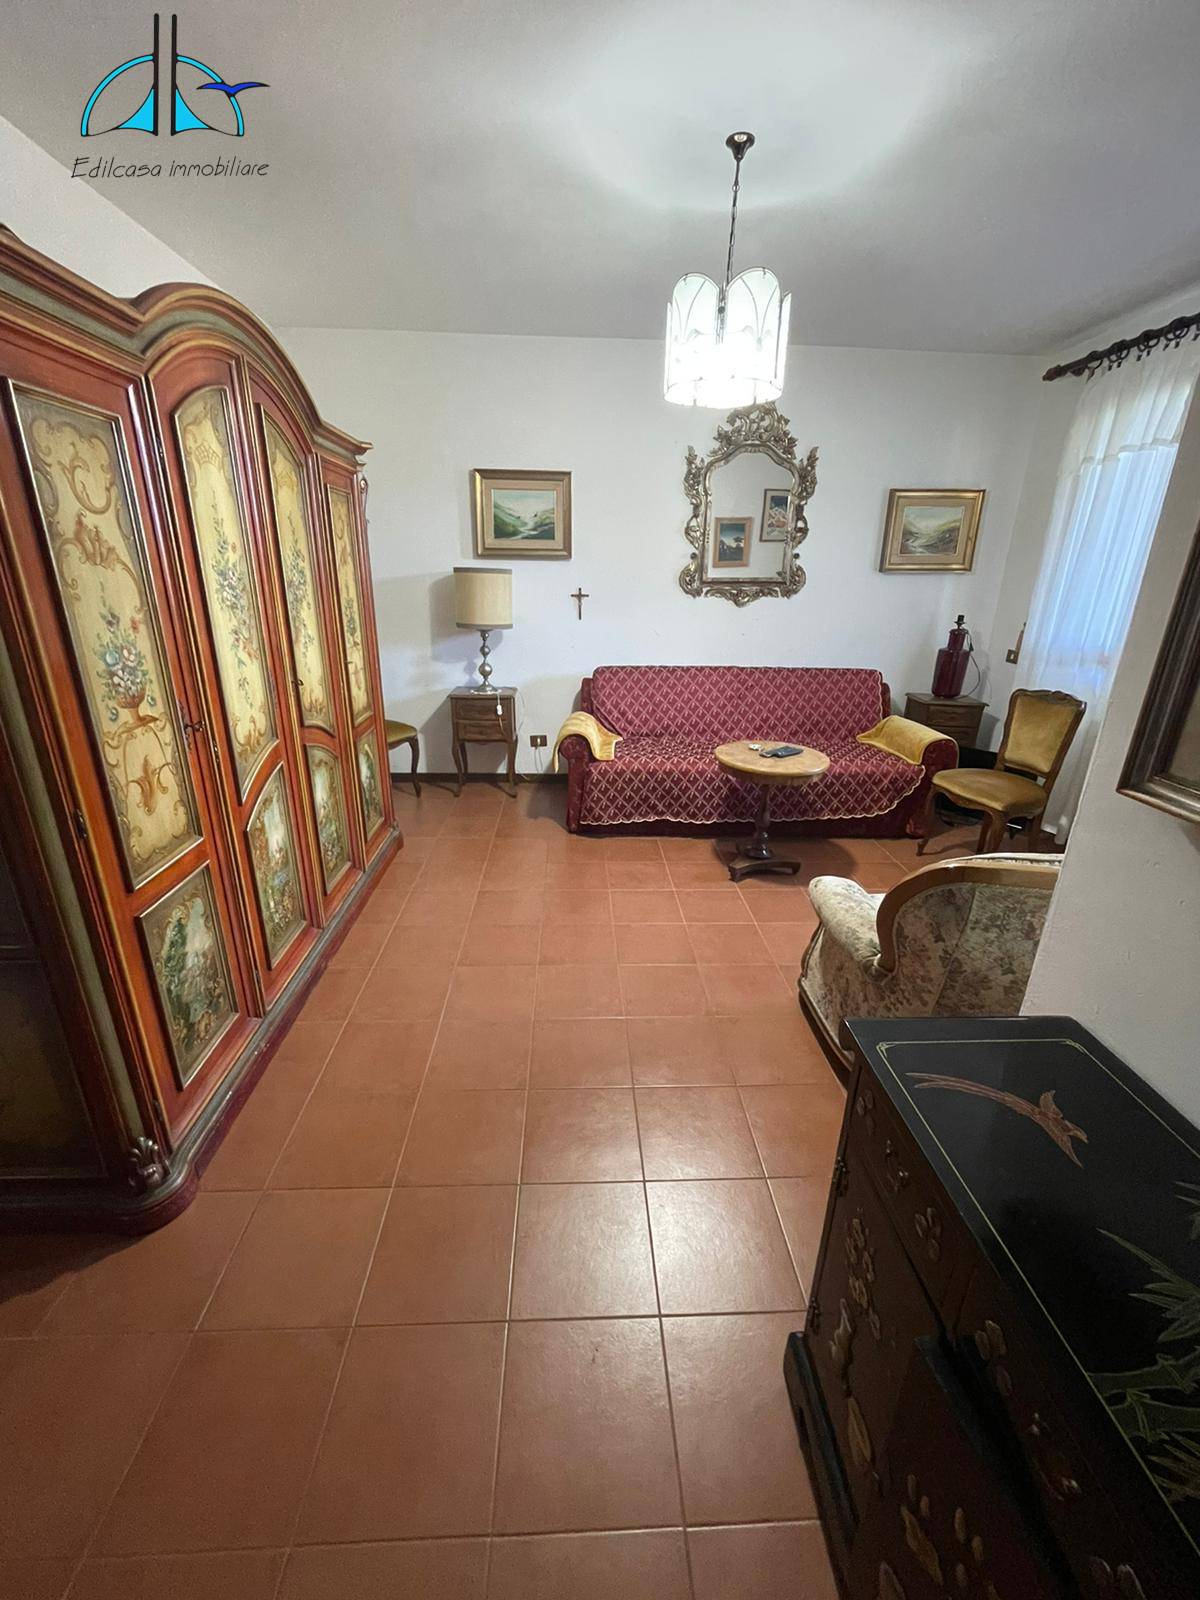 Appartamento in vendita a Scandriglia, 4 locali, prezzo € 58.000 | PortaleAgenzieImmobiliari.it